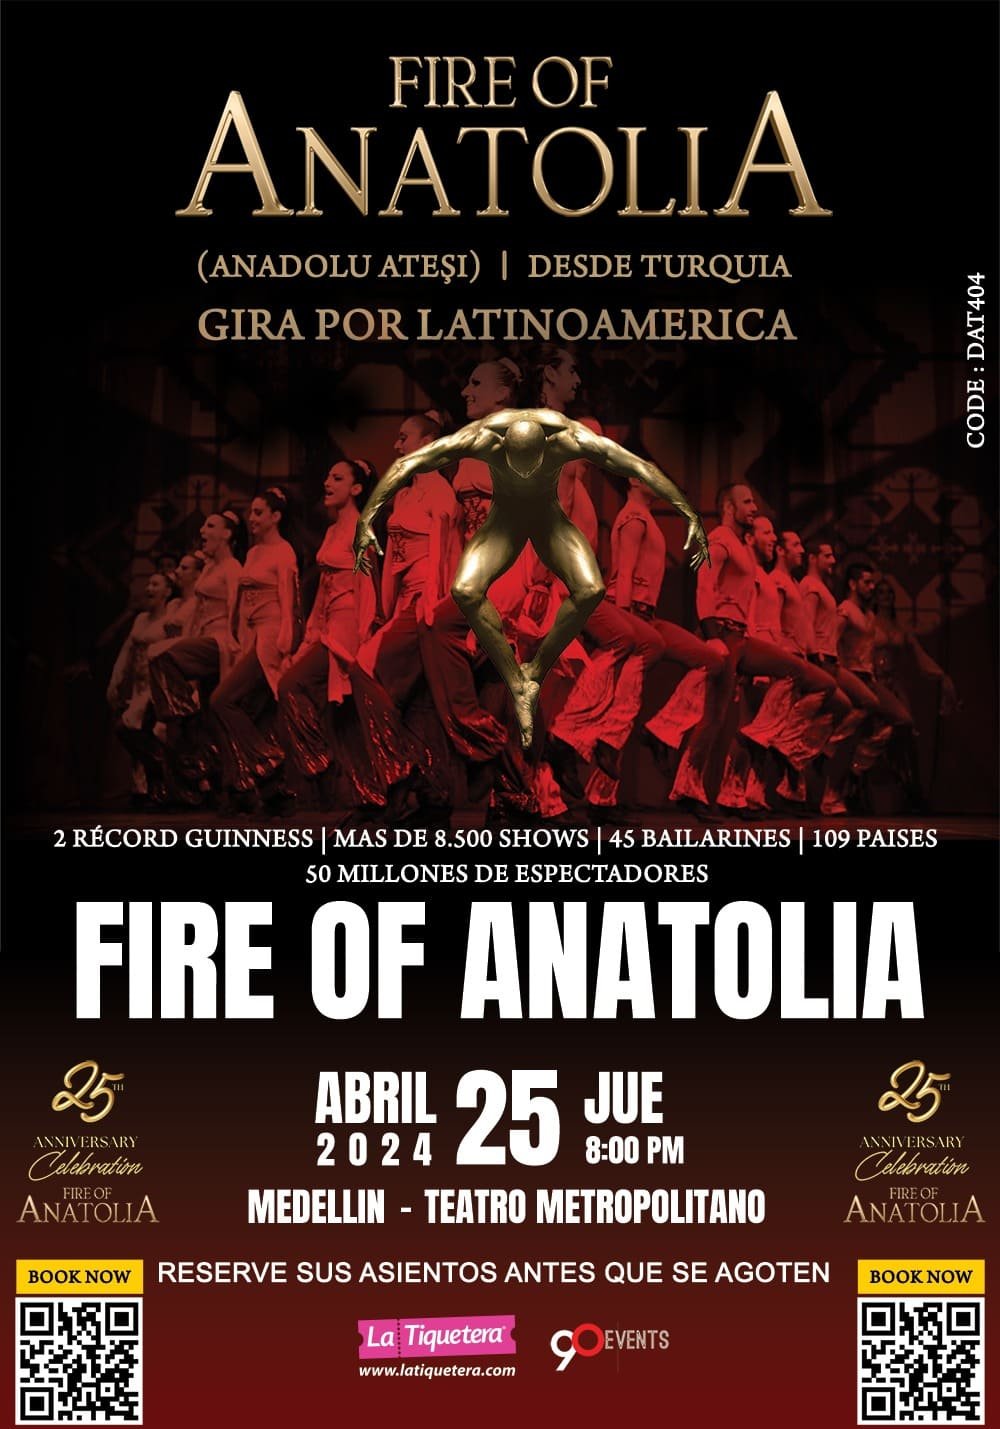 Fire of Anatolia se toma el Teatro Metropolitano y el Astor Plaza